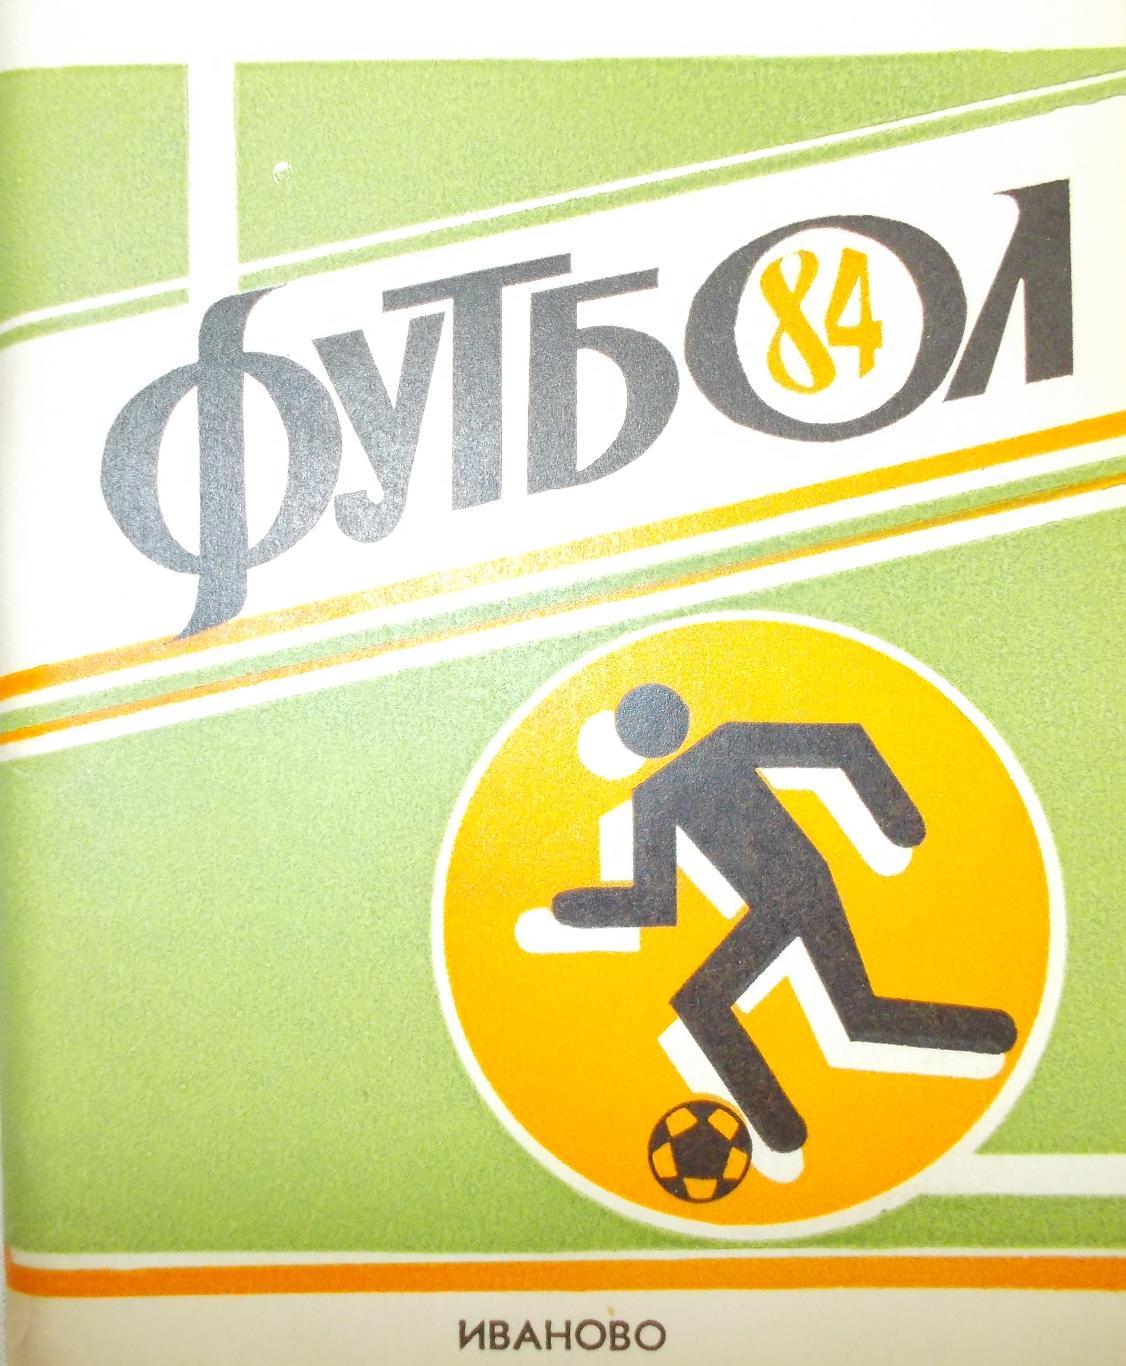 Футбол. Иваново - 1984